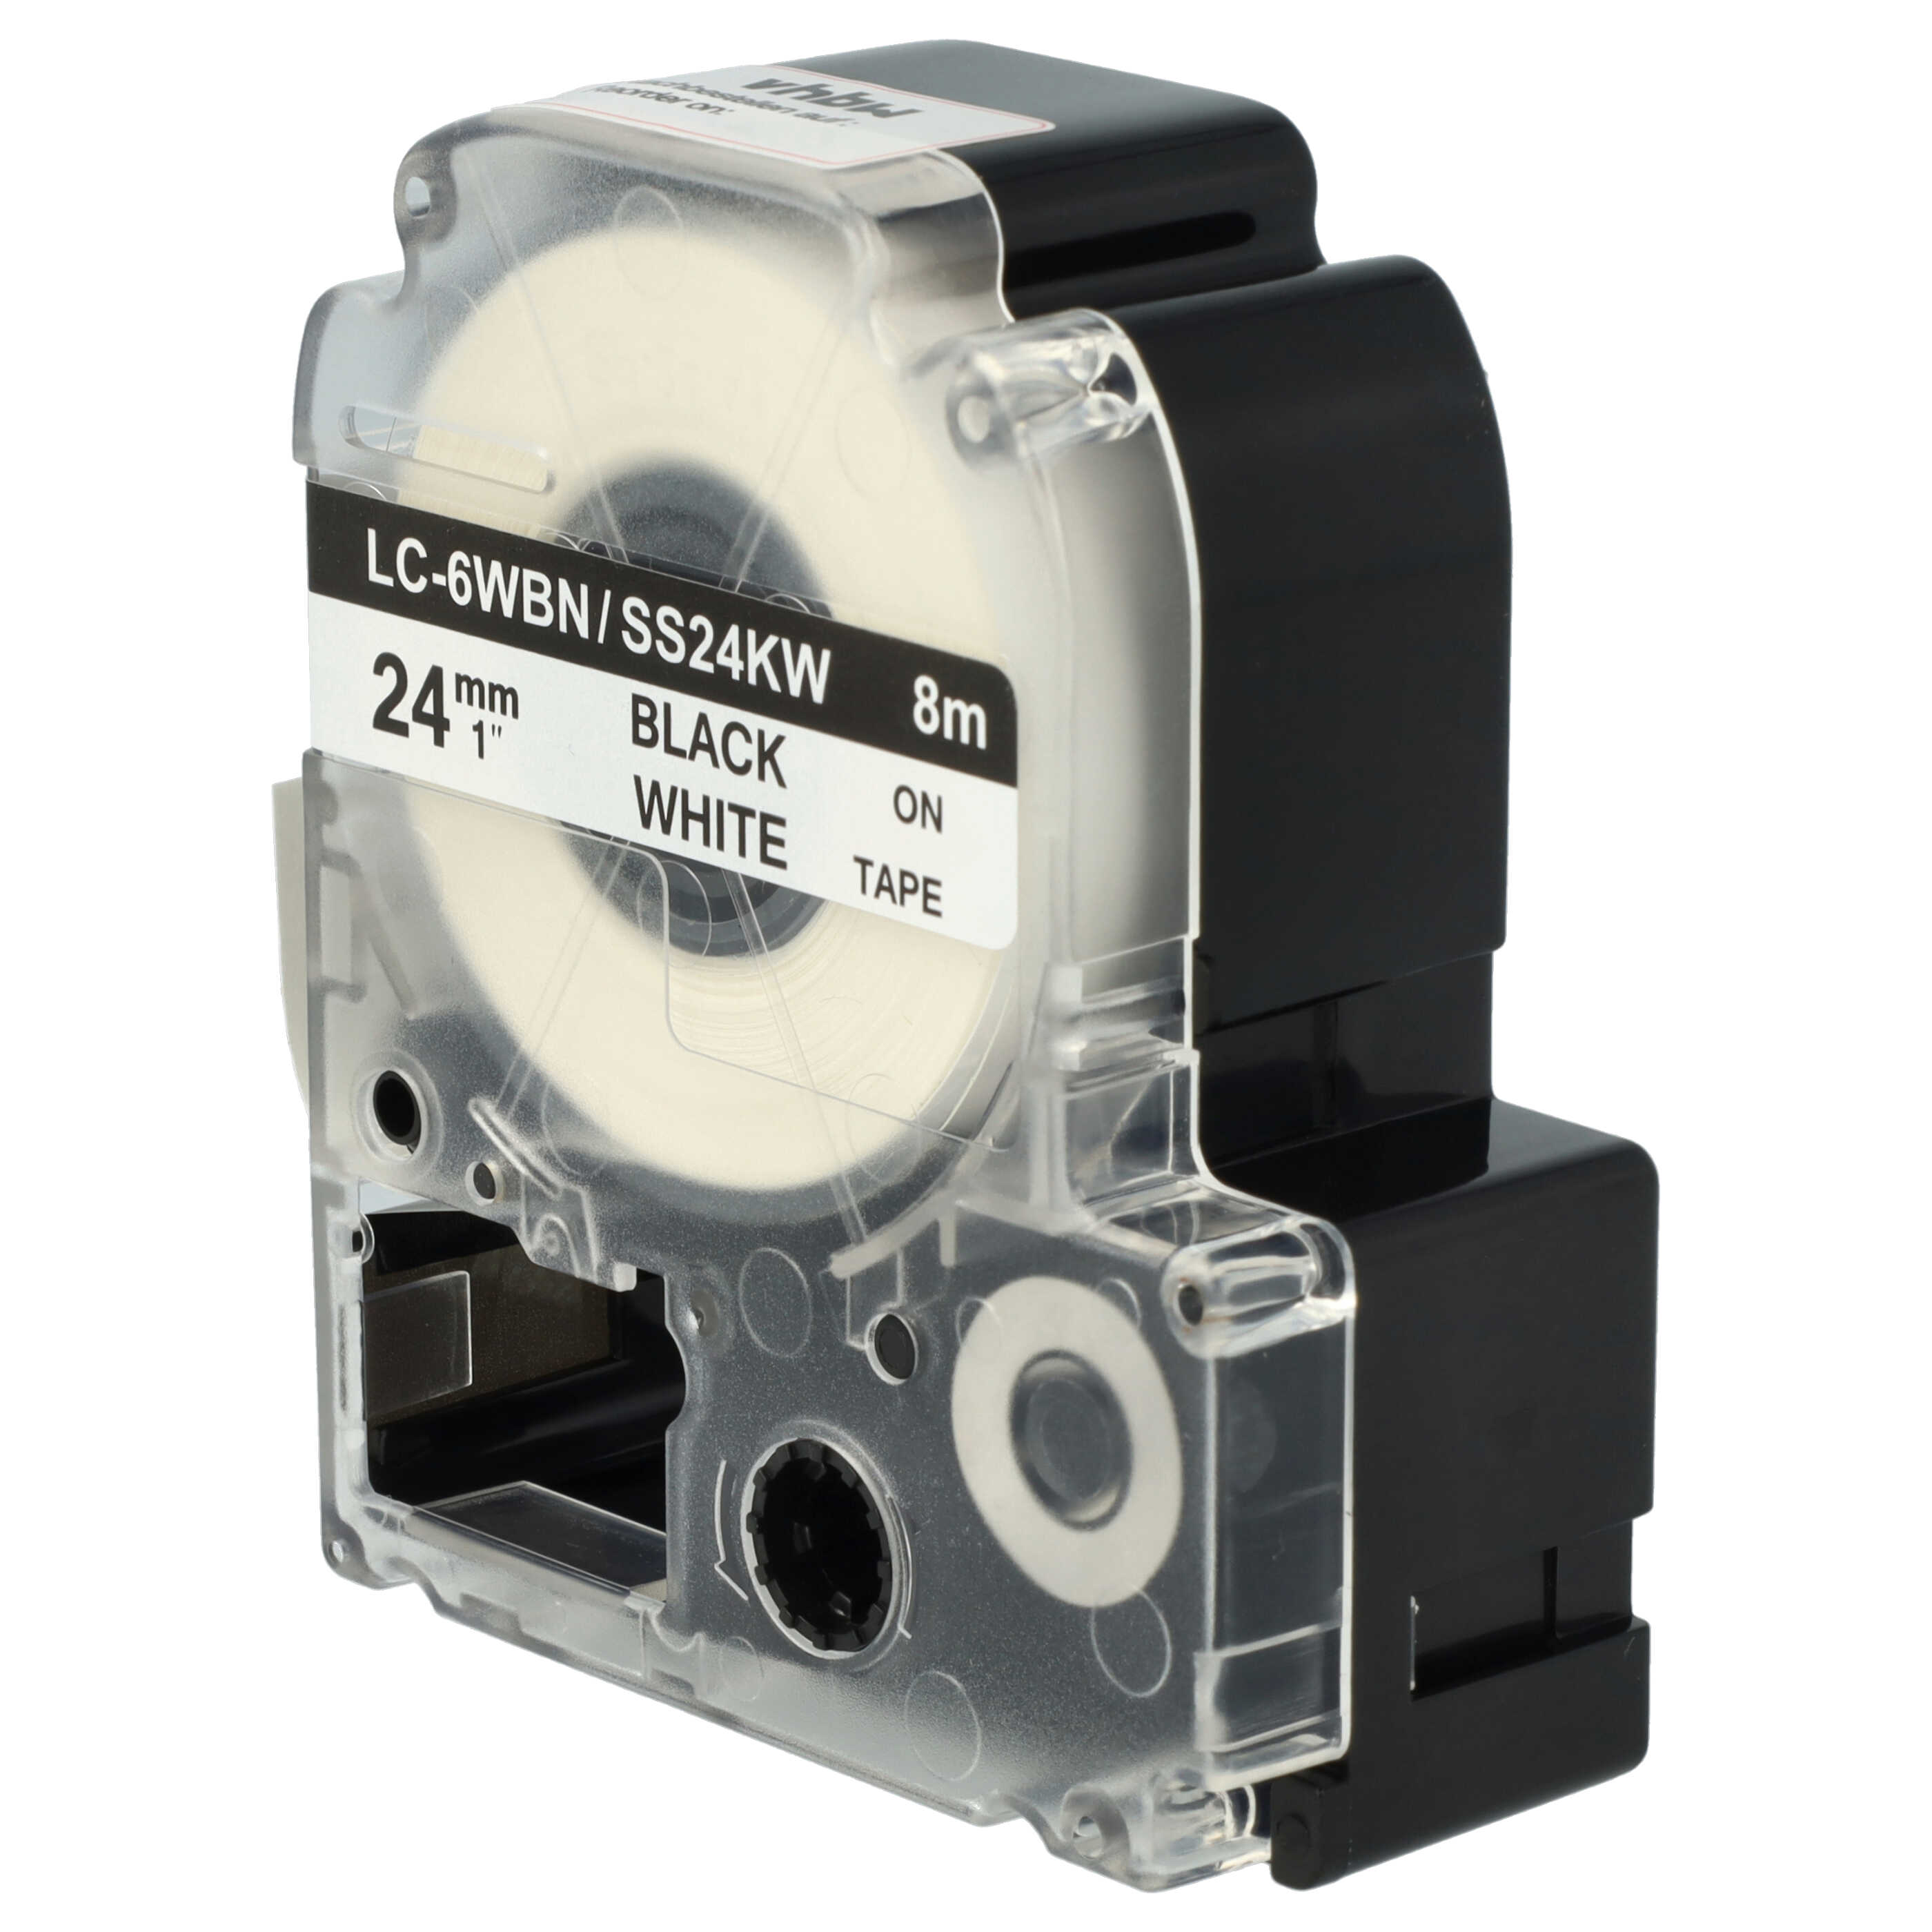 5x Cassetta nastro sostituisce Epson LC-6WBN per etichettatrice Epson 24mm nero su bianco